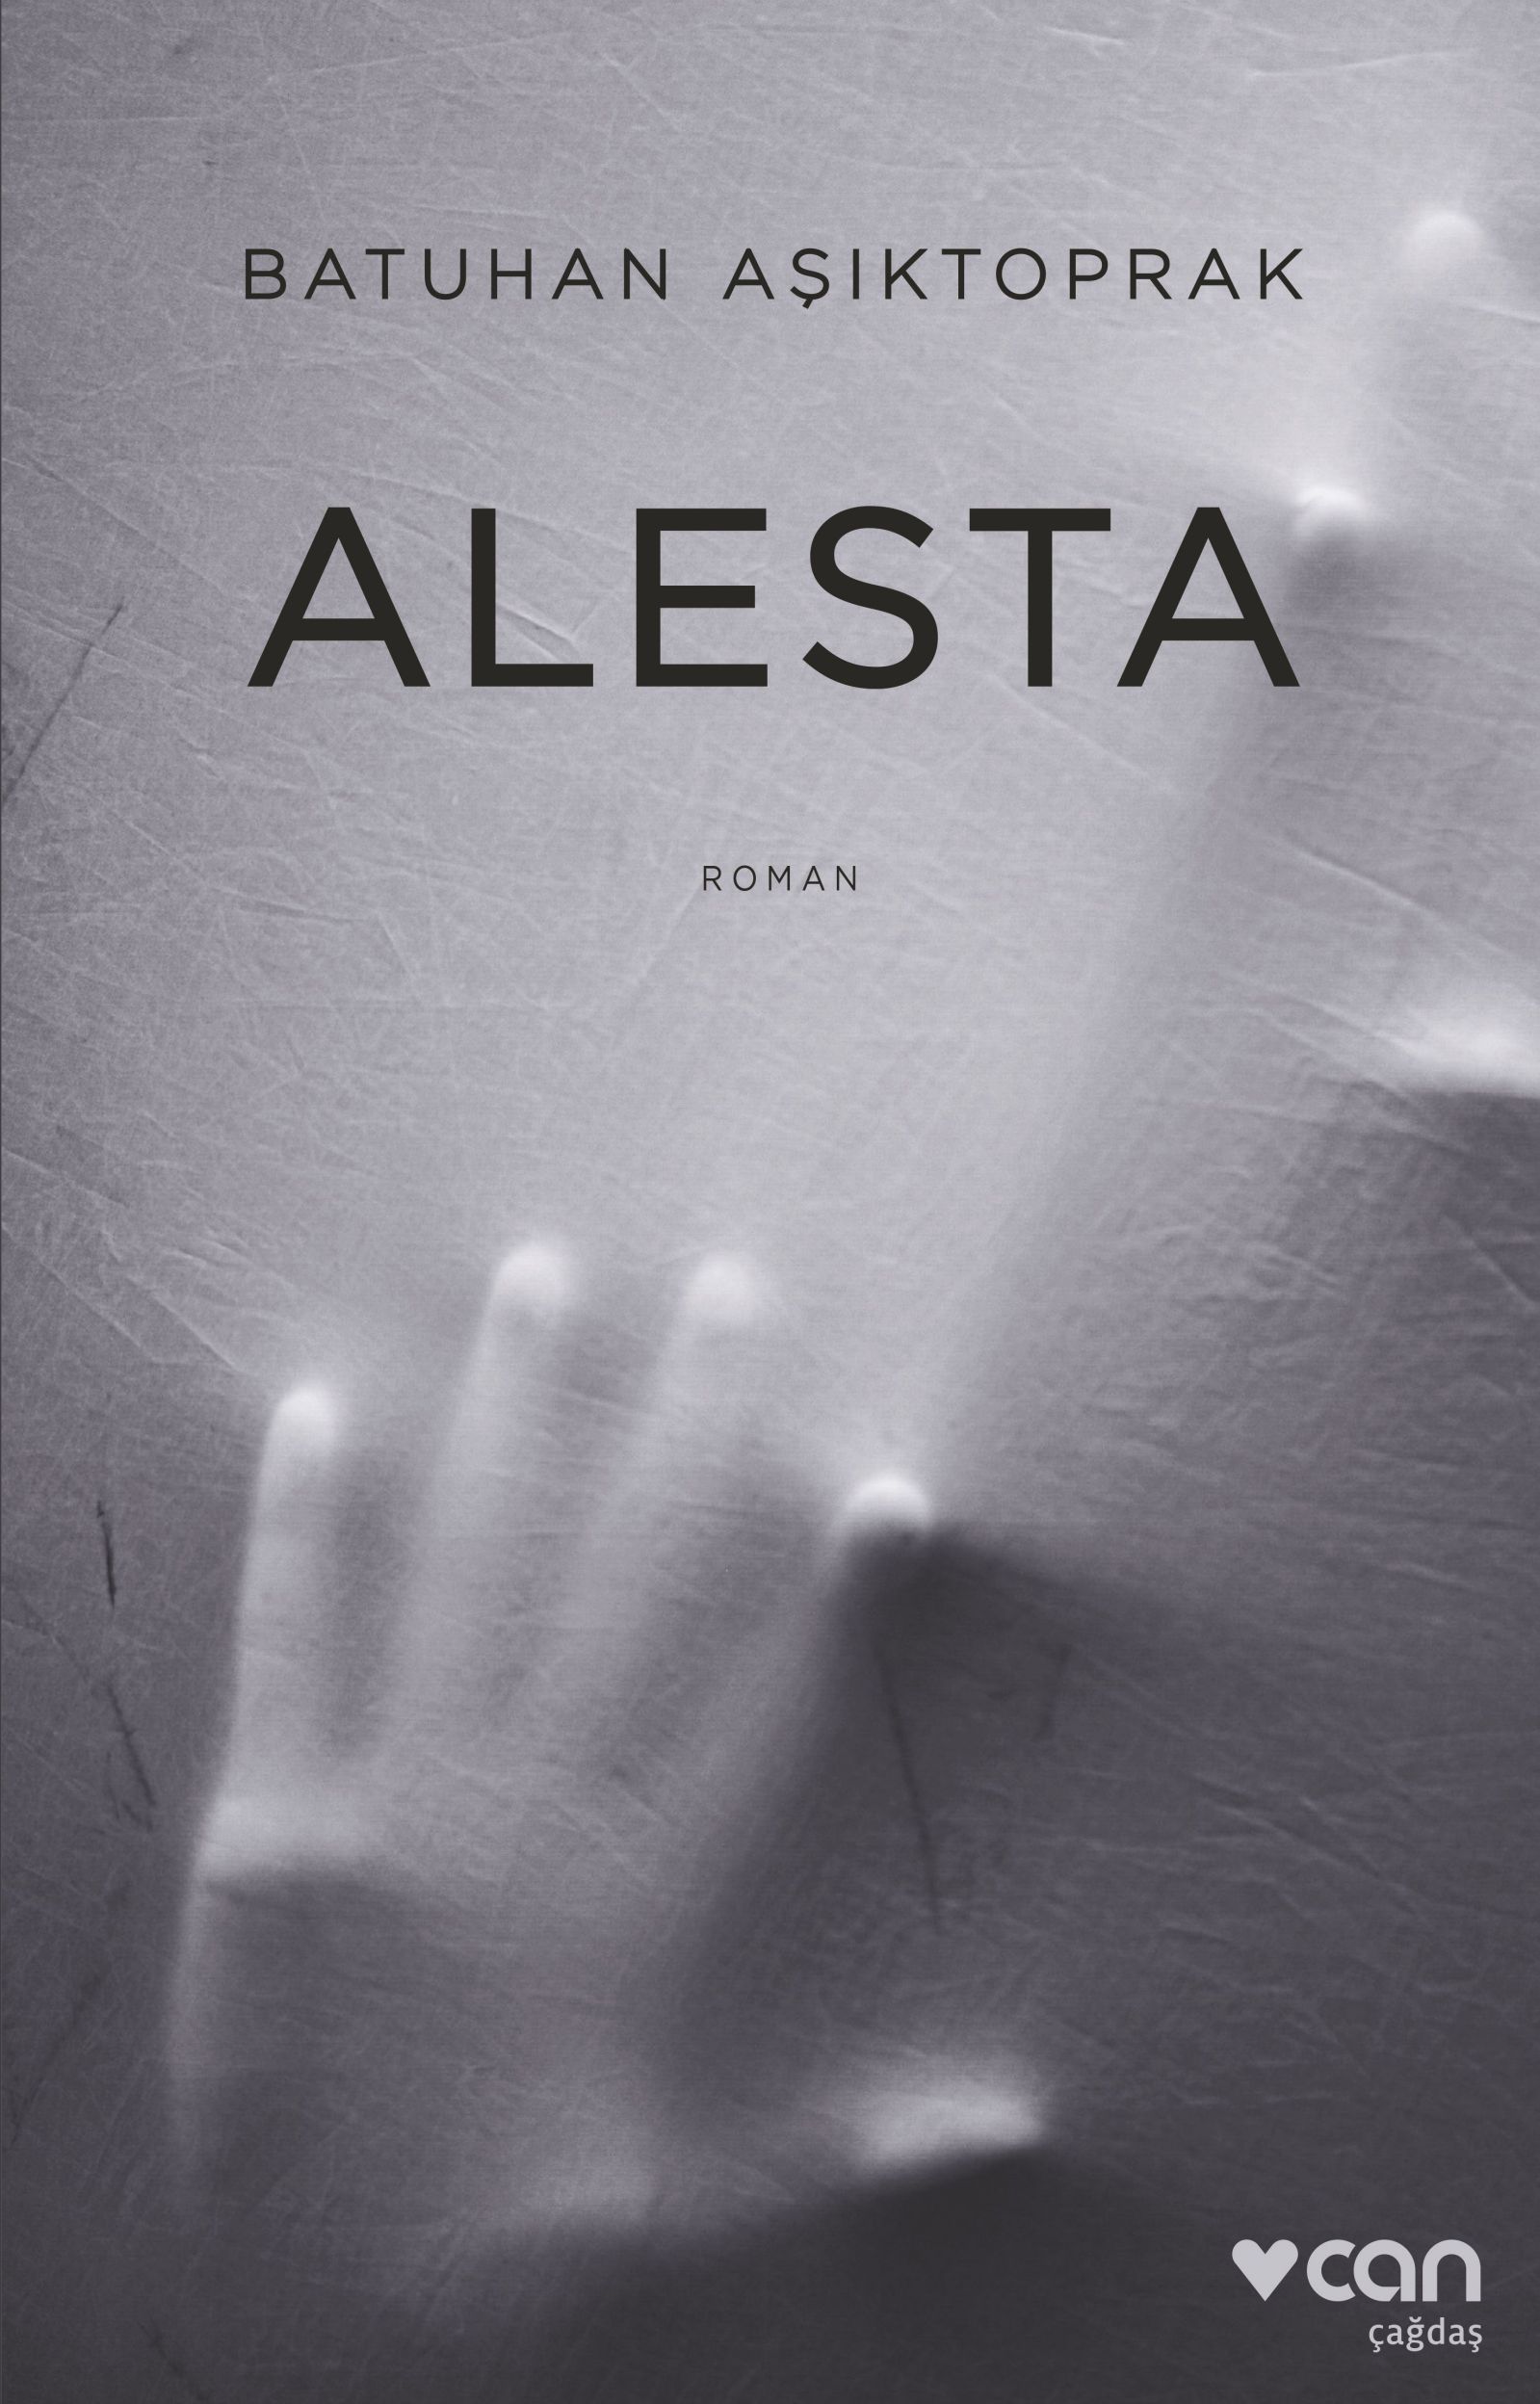 Alesta - Batuhan Aşıktoprak Romanı